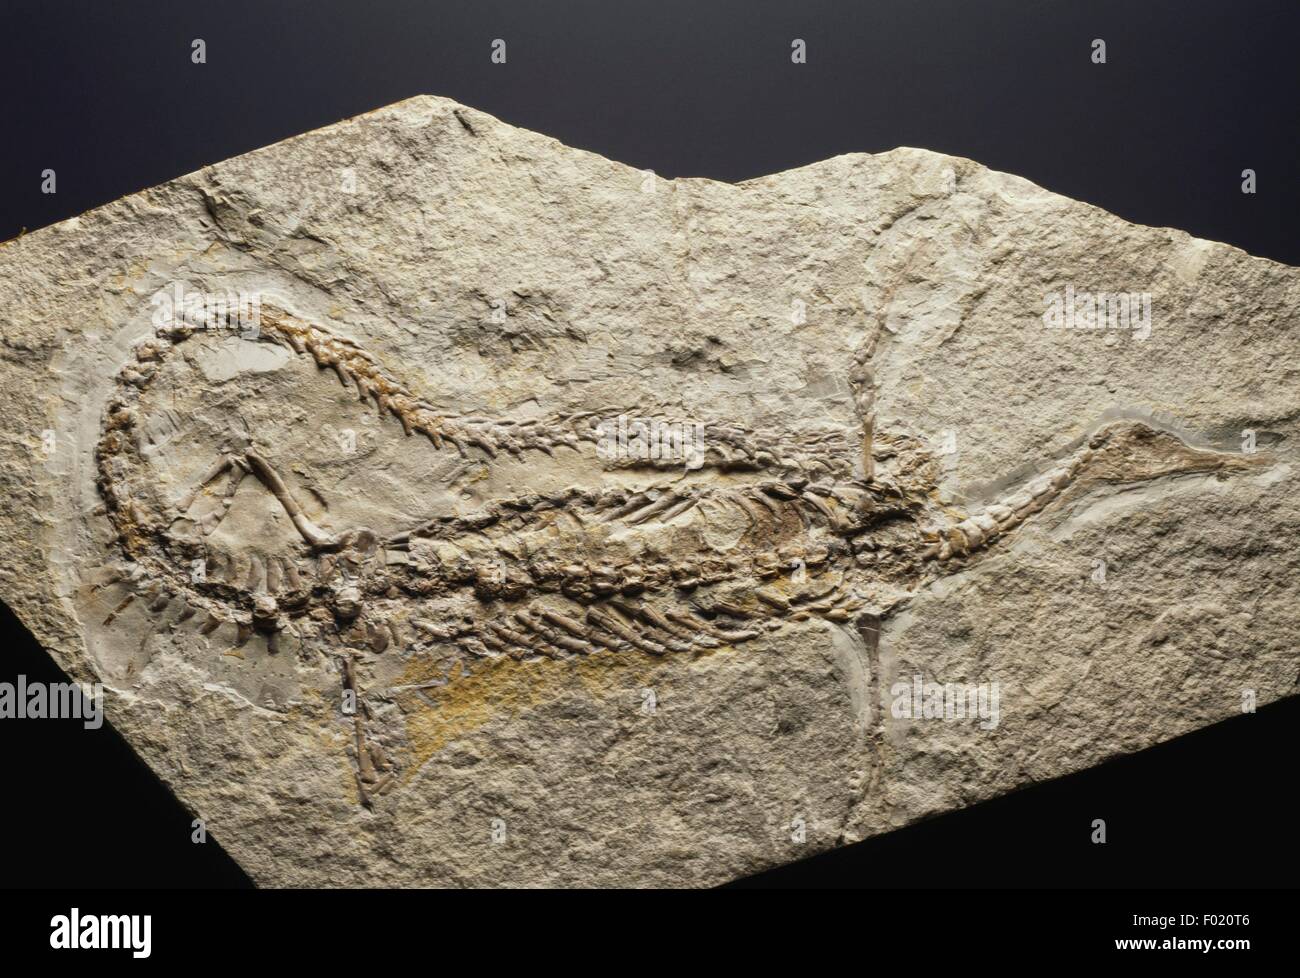 Fossile di Stereosternum tumidum, rettili, Permiano inferiore, che si trova in Brasile. Foto Stock